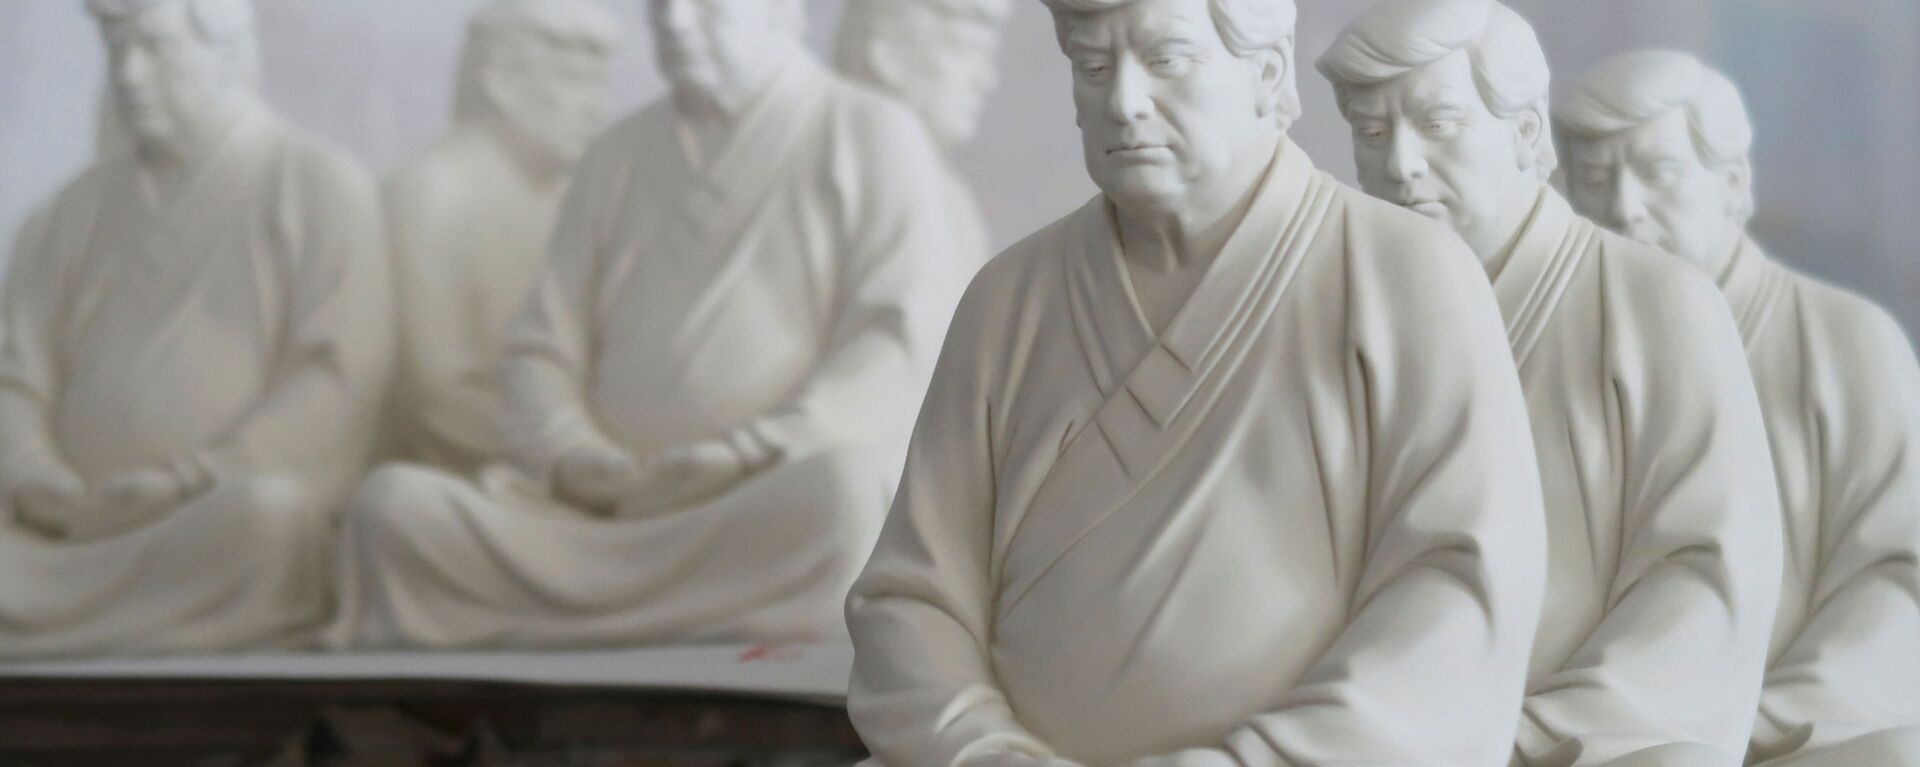 Статуи бывшего президента США Дональда Трампа в буддийской медитативной позе работы китайского дизайнера - Sputnik Беларусь, 1920, 09.04.2021